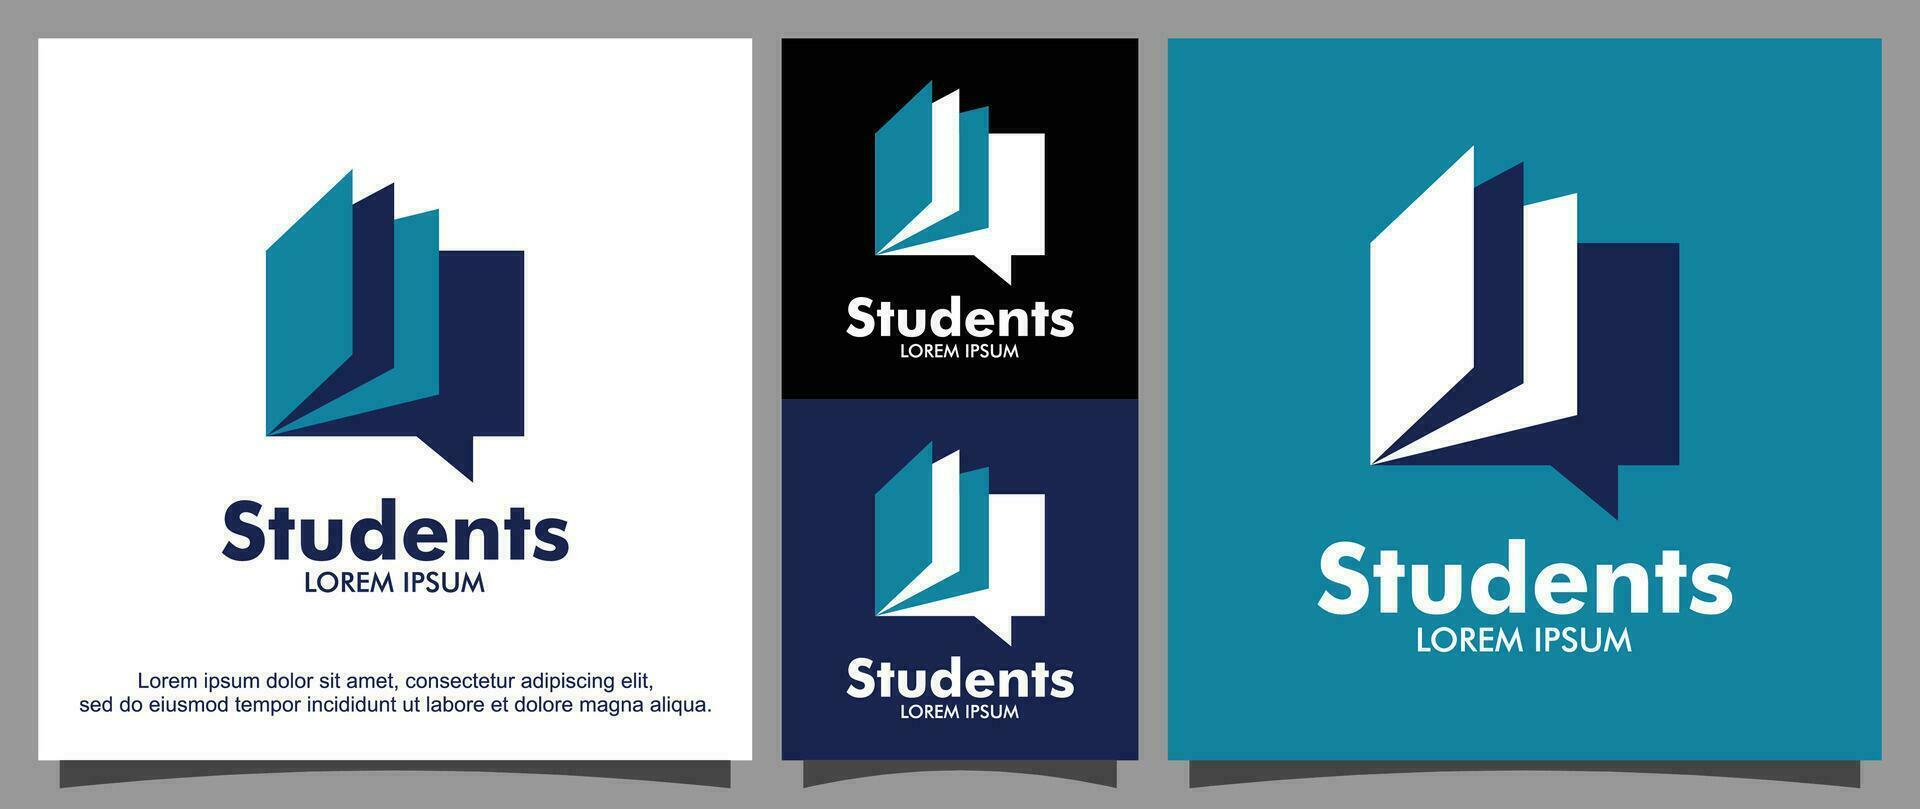 studerande och utbildning logotyp mall vektor